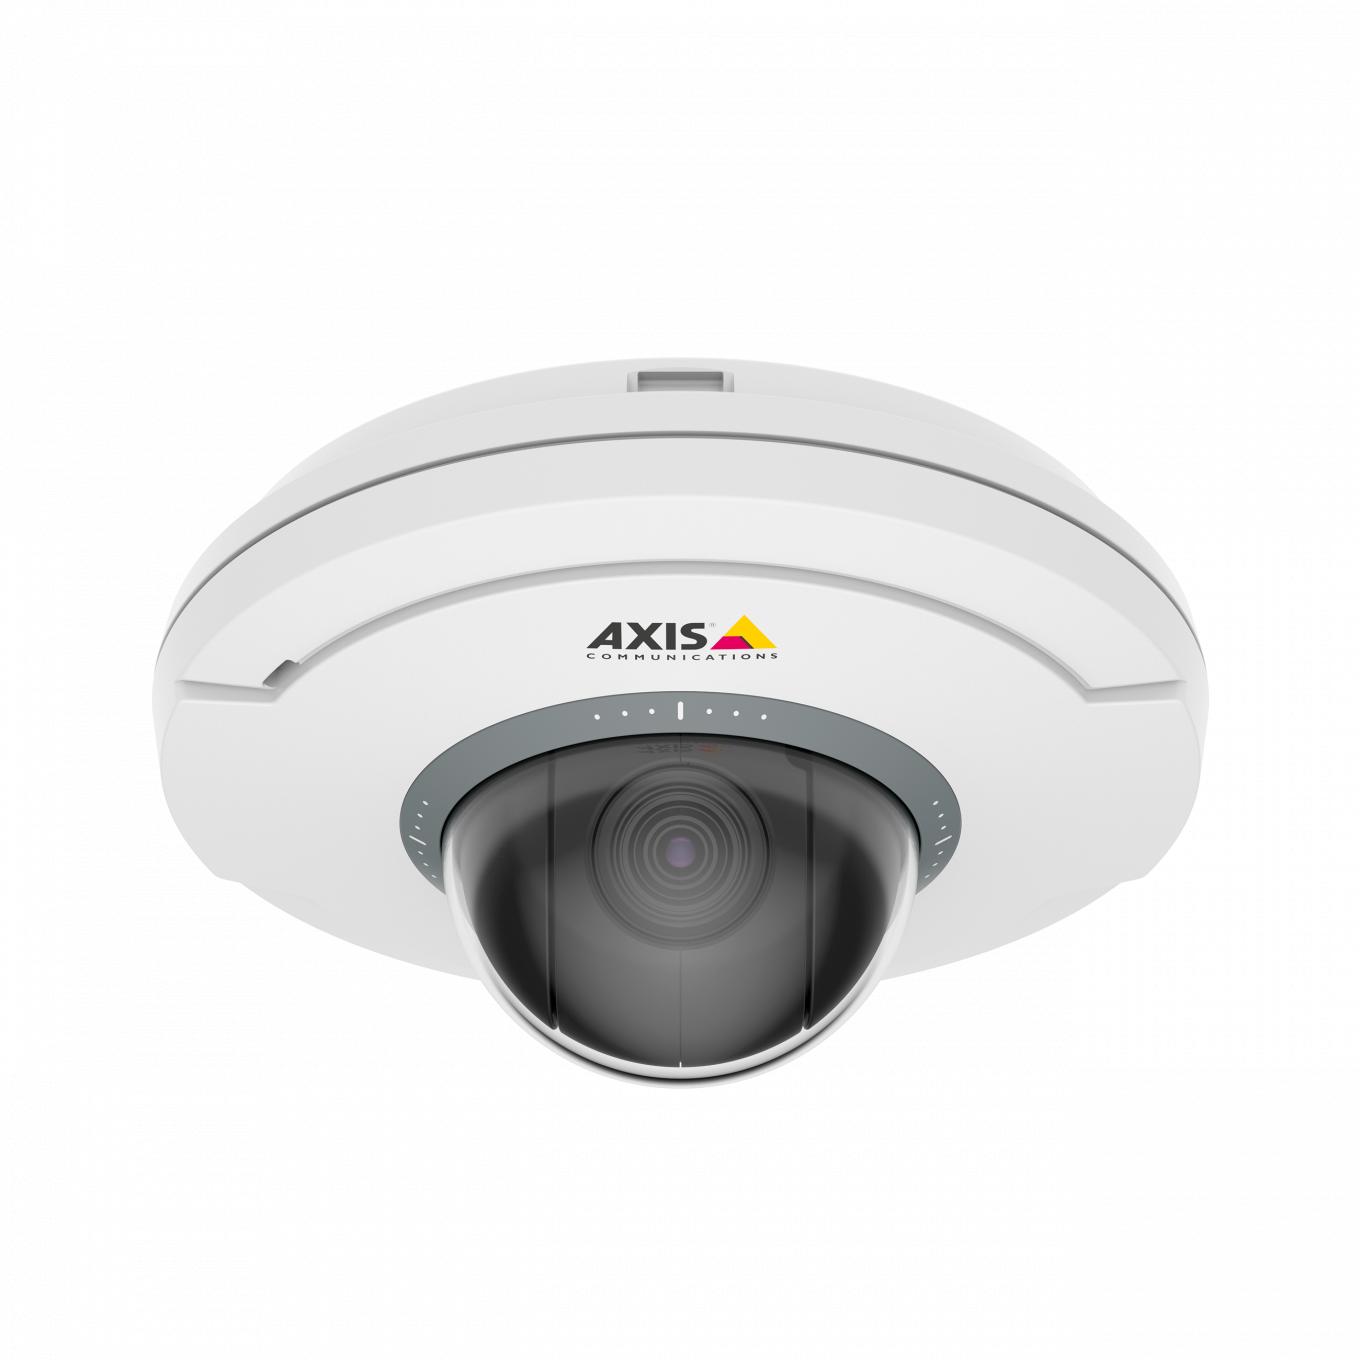 AXIS M5075 cadre blanc et caméra noire avec le logo Axis vu de face